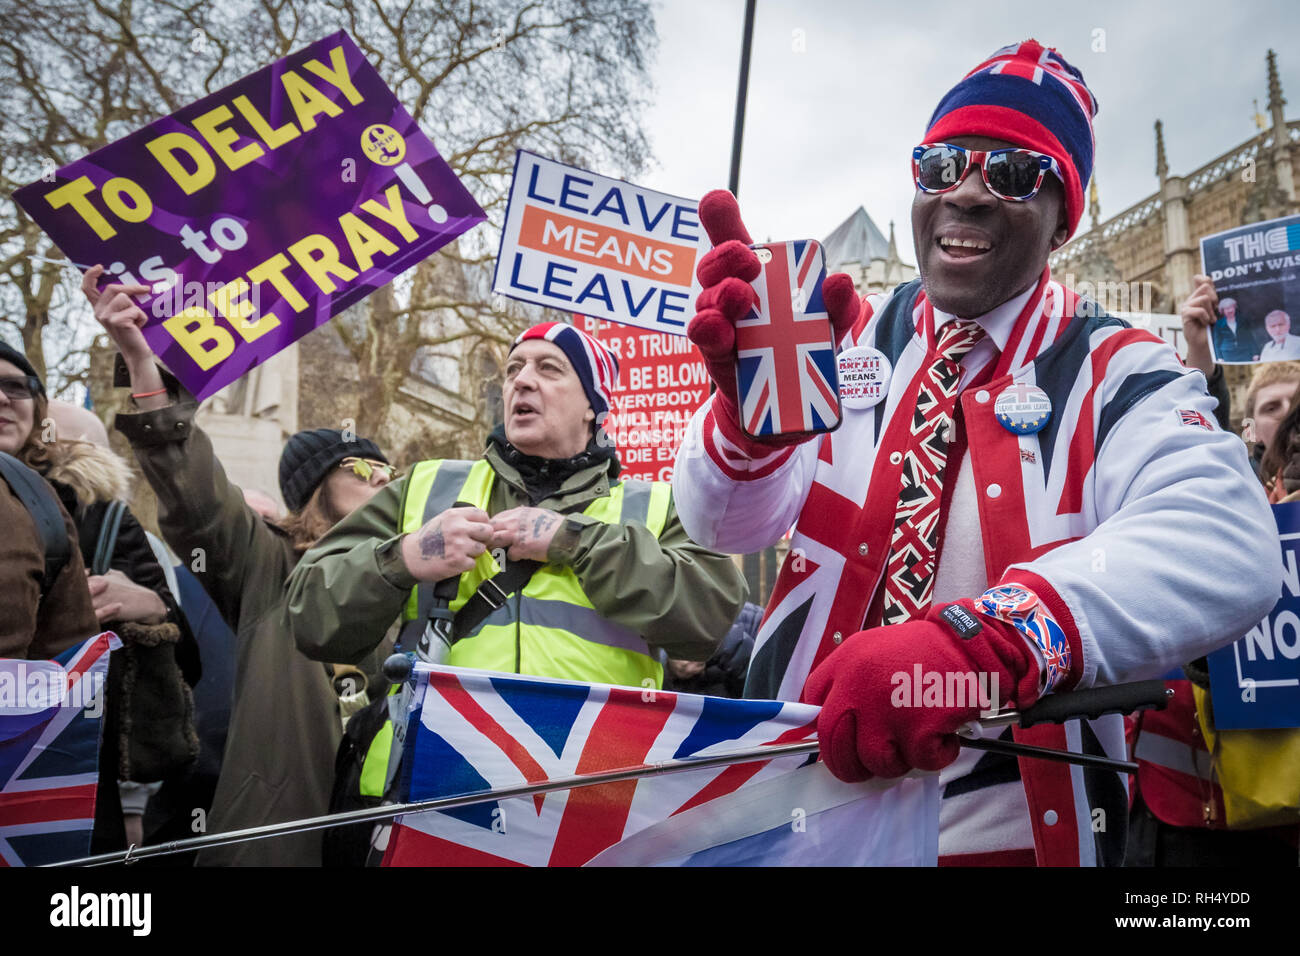 Pro- und Anti-Brexit Demonstranten sammeln und außerhalb des Parlaments Gebäude in Westminster, London protestieren. Stockfoto